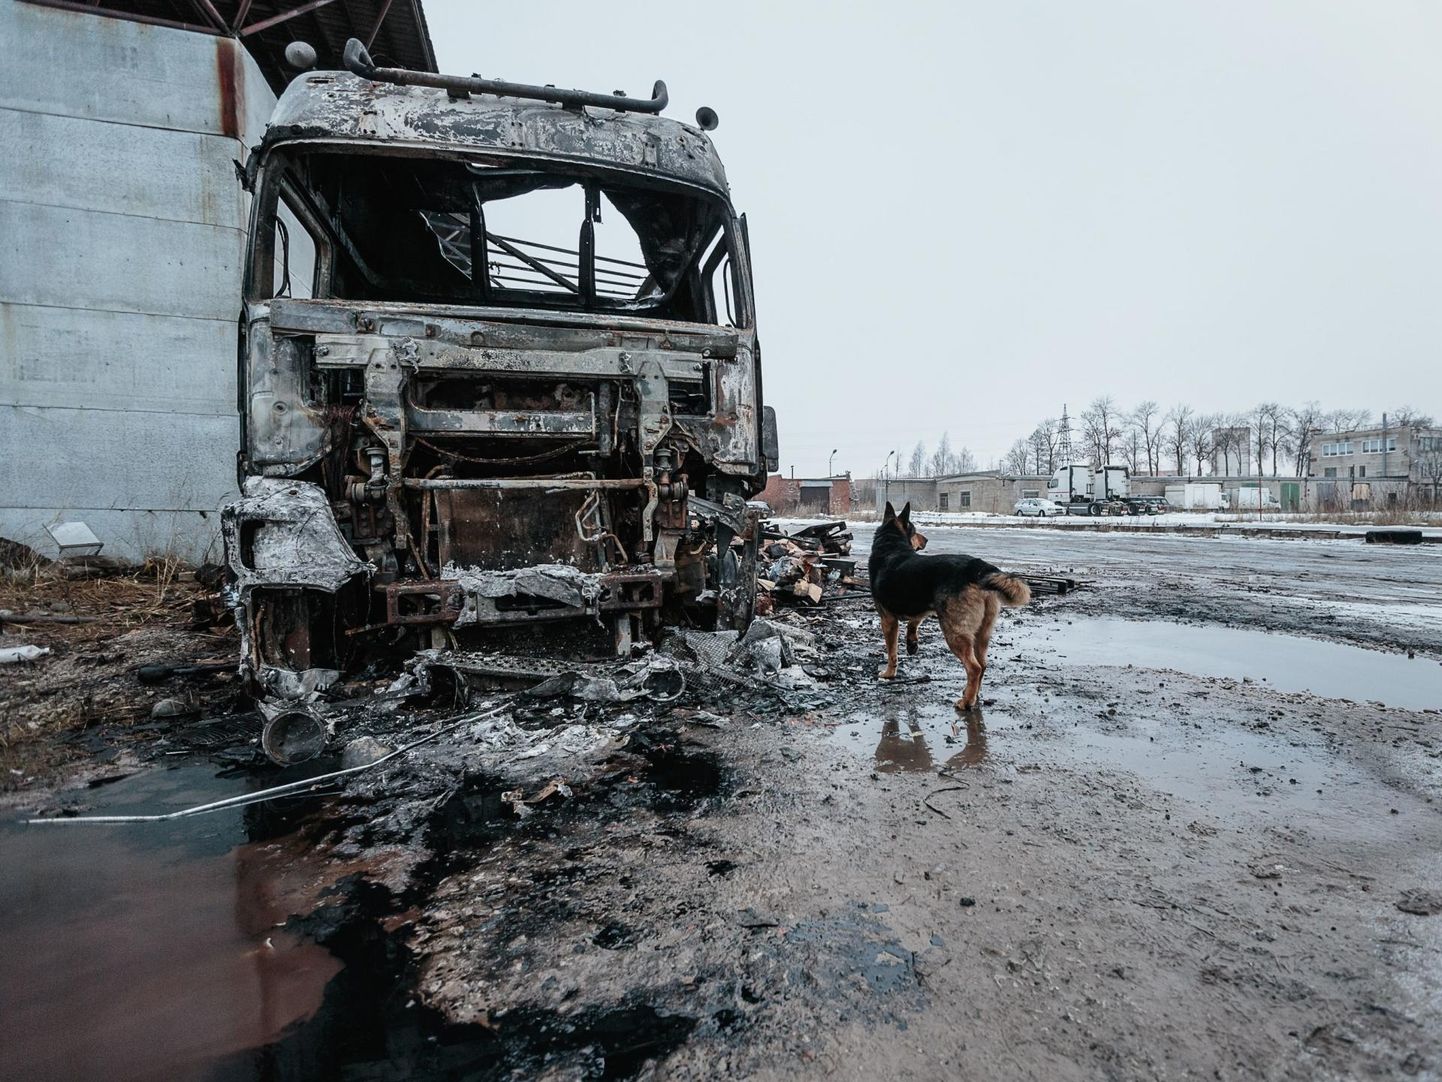 See foto põlenud autost on tehtud 2017. aasta detsembris Narvas veoautode parkimisalal, kui seal oli süüdatud šokolaadilastiga veok.